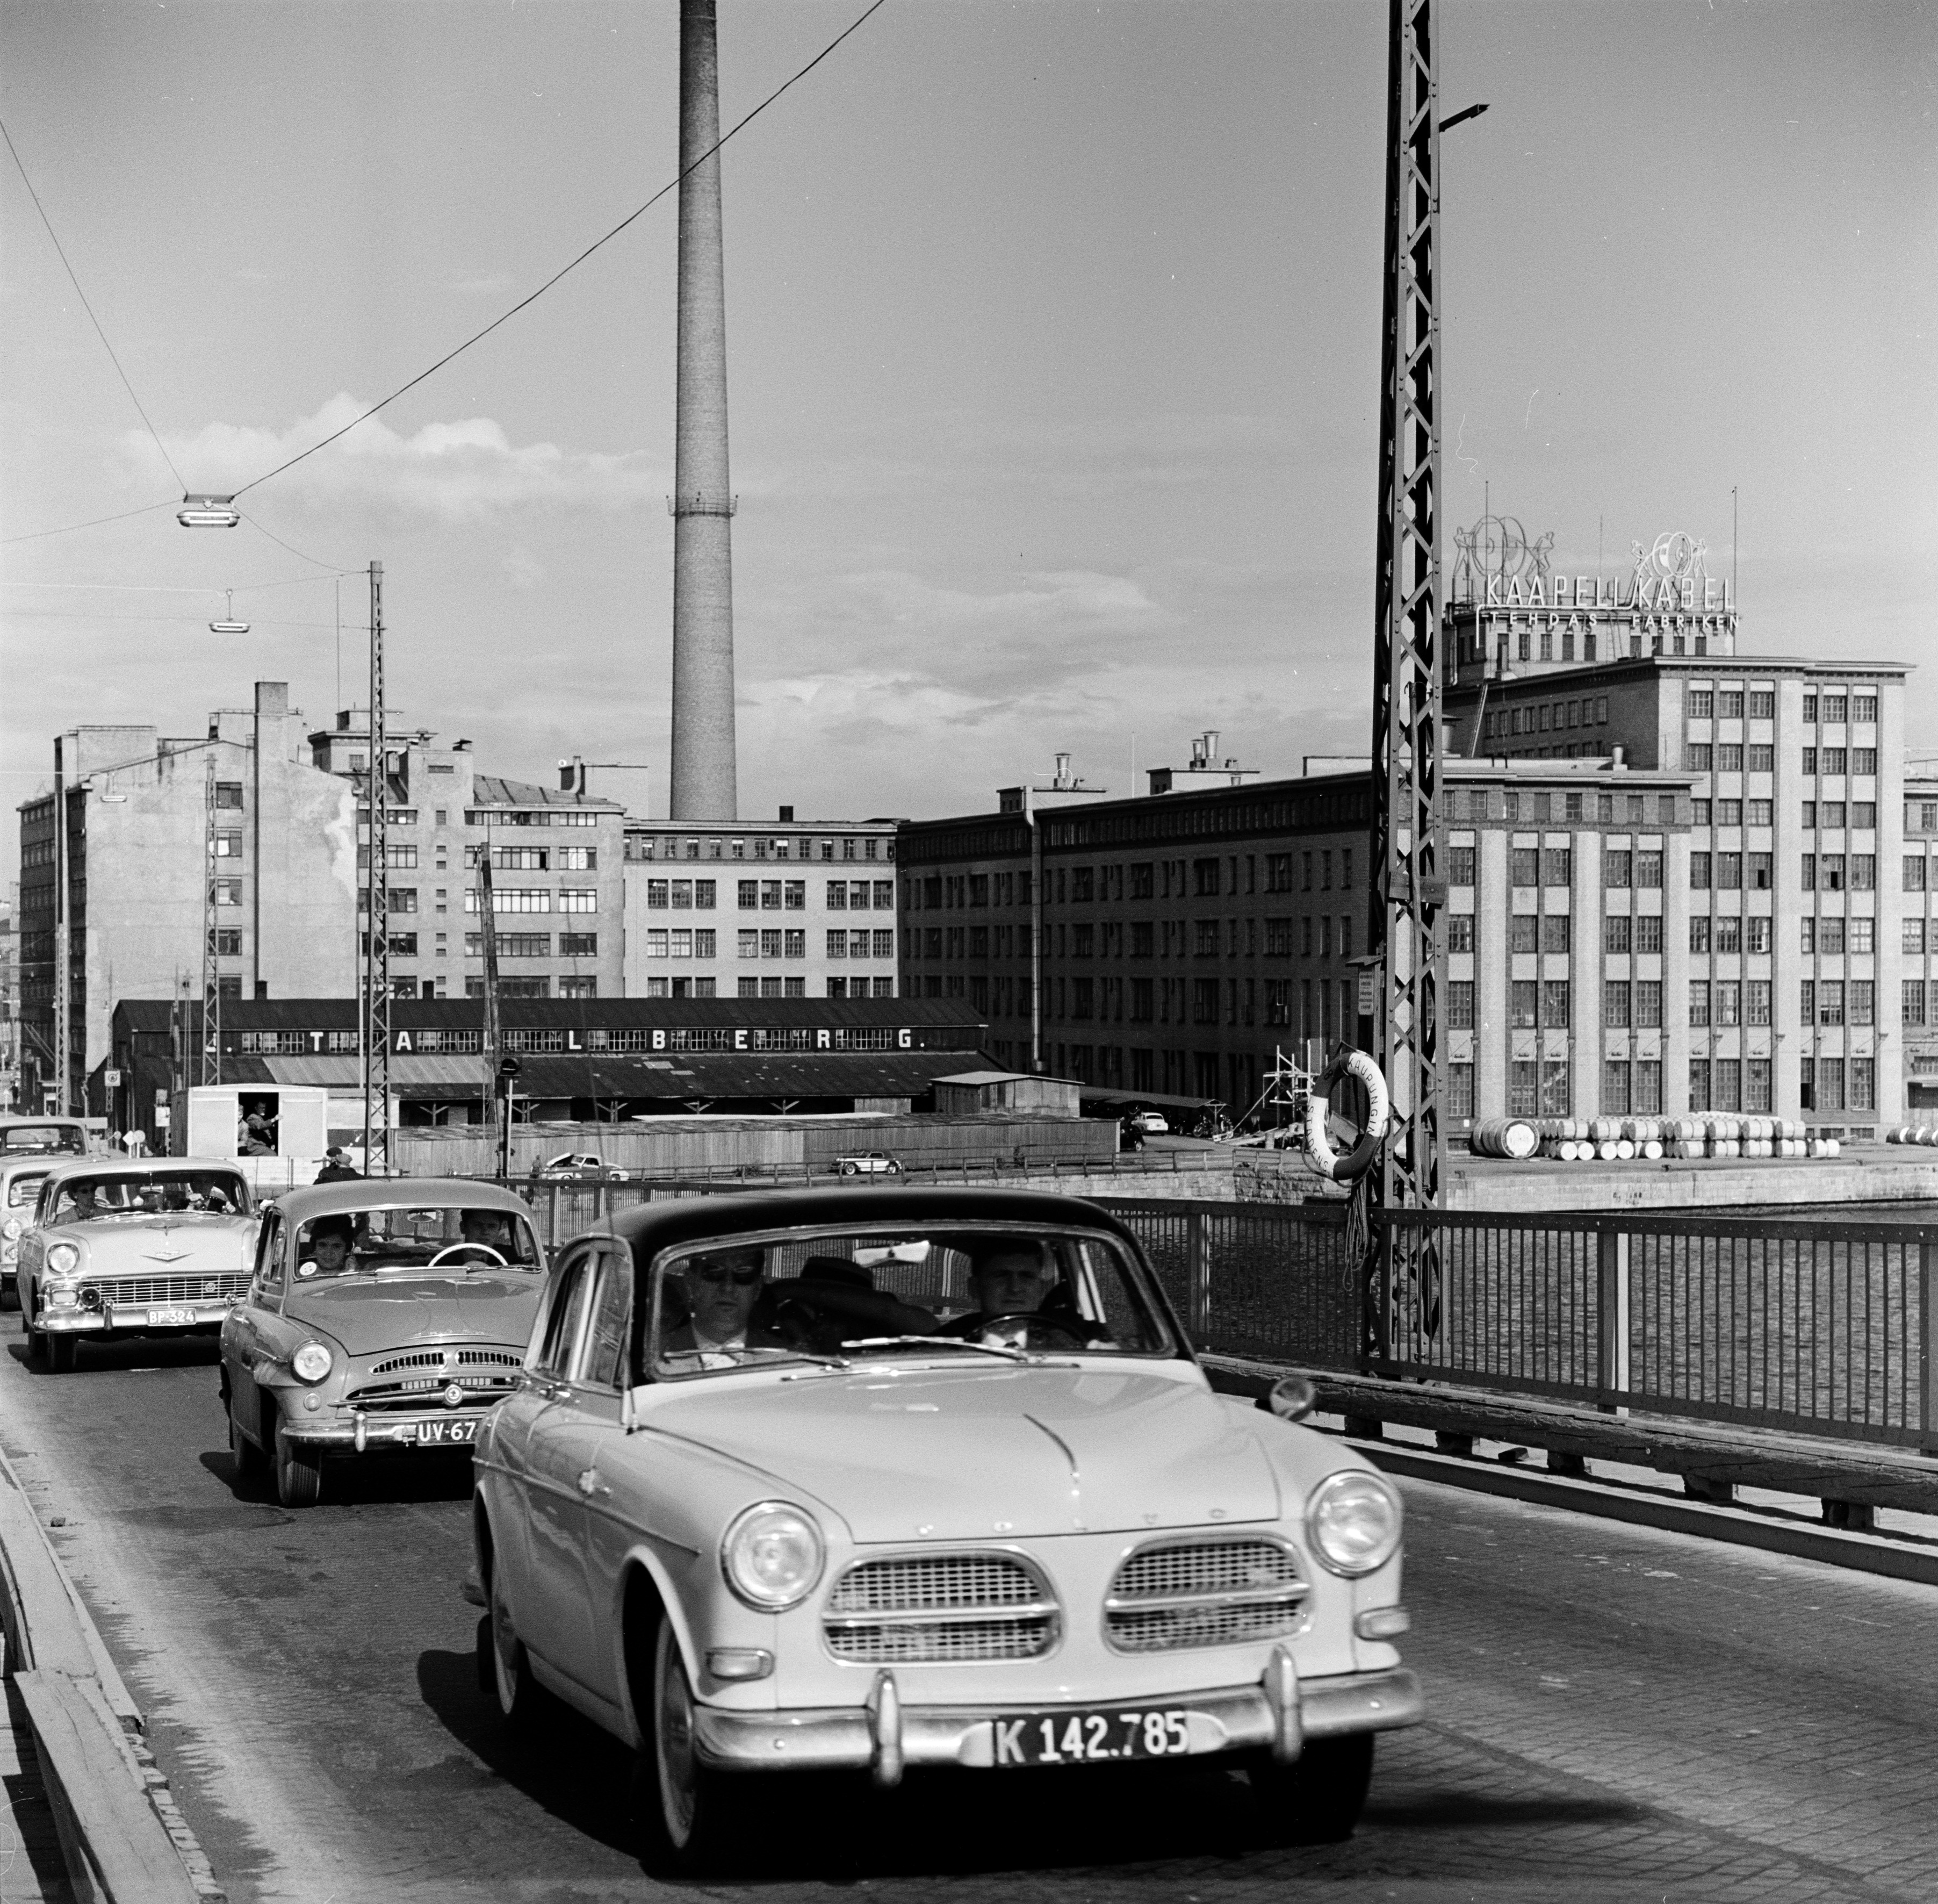 Liikennettä Lauttasaaren sillalla.  Taustalla oikealla Suomen Kaapelitehdas. Myös Julius Tallberg Oy:n varasto näkyy. Ajoneuvot kuvan etualalta taaksepäin lukien: Volvo Amazon, Skoda 440, Chevrolet vm. 1956.